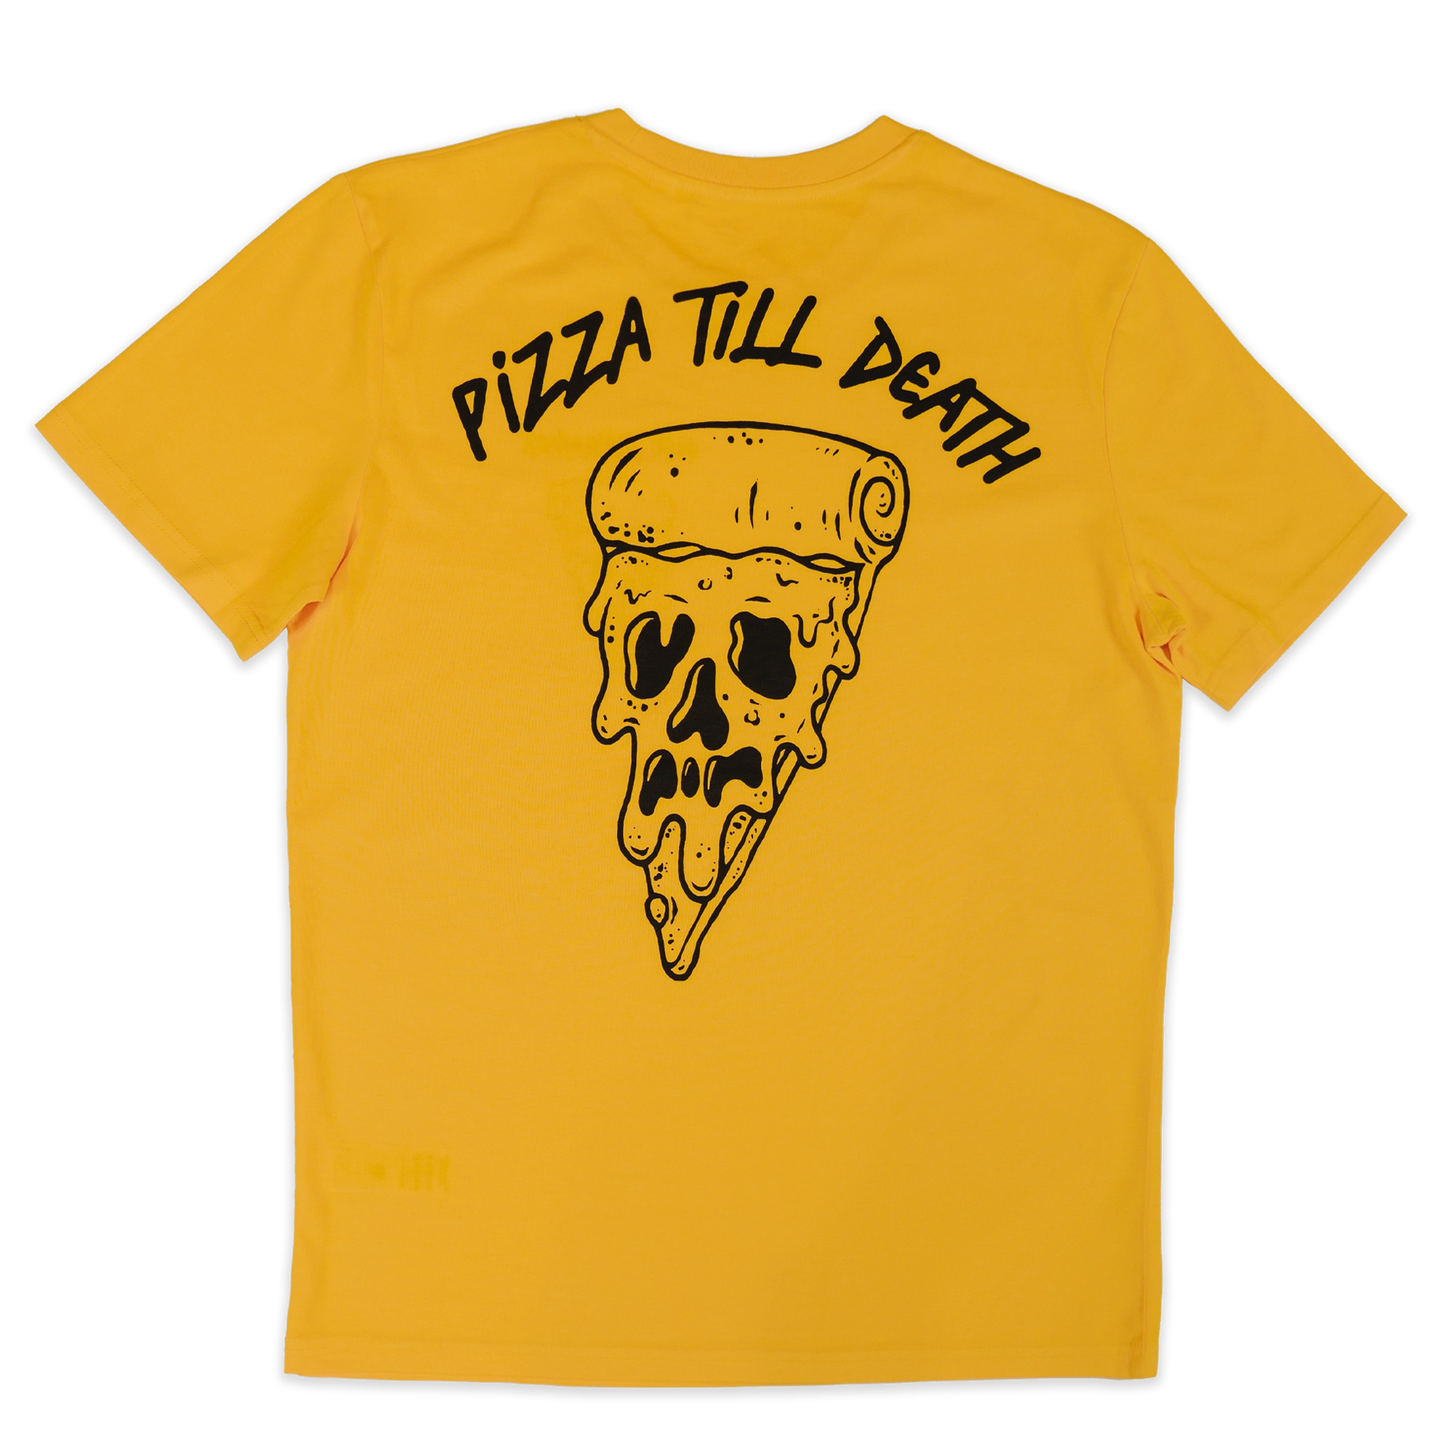 Pizza Till Death T-Shirt